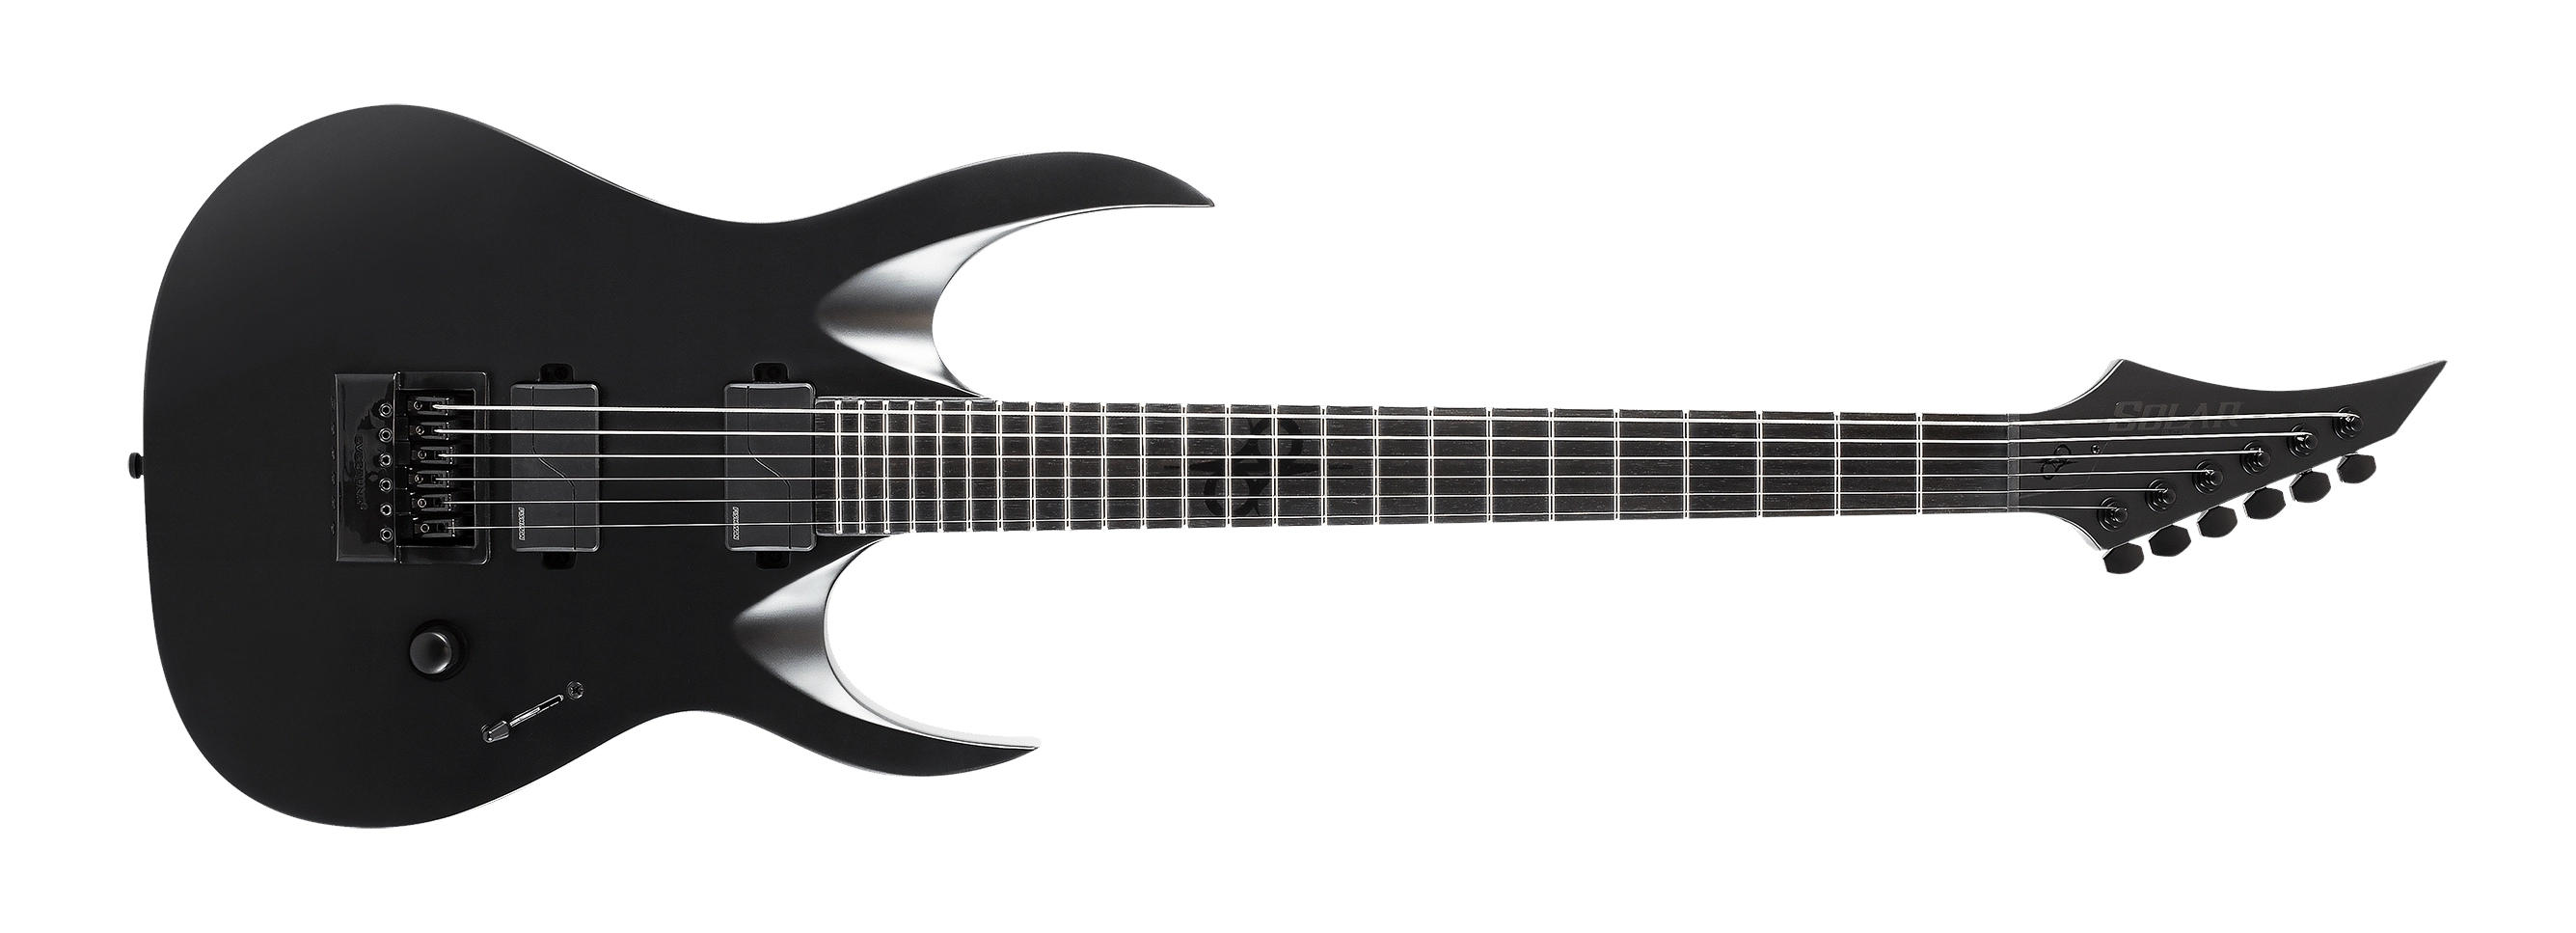 la guitare solar carbon black pour jouer du metal